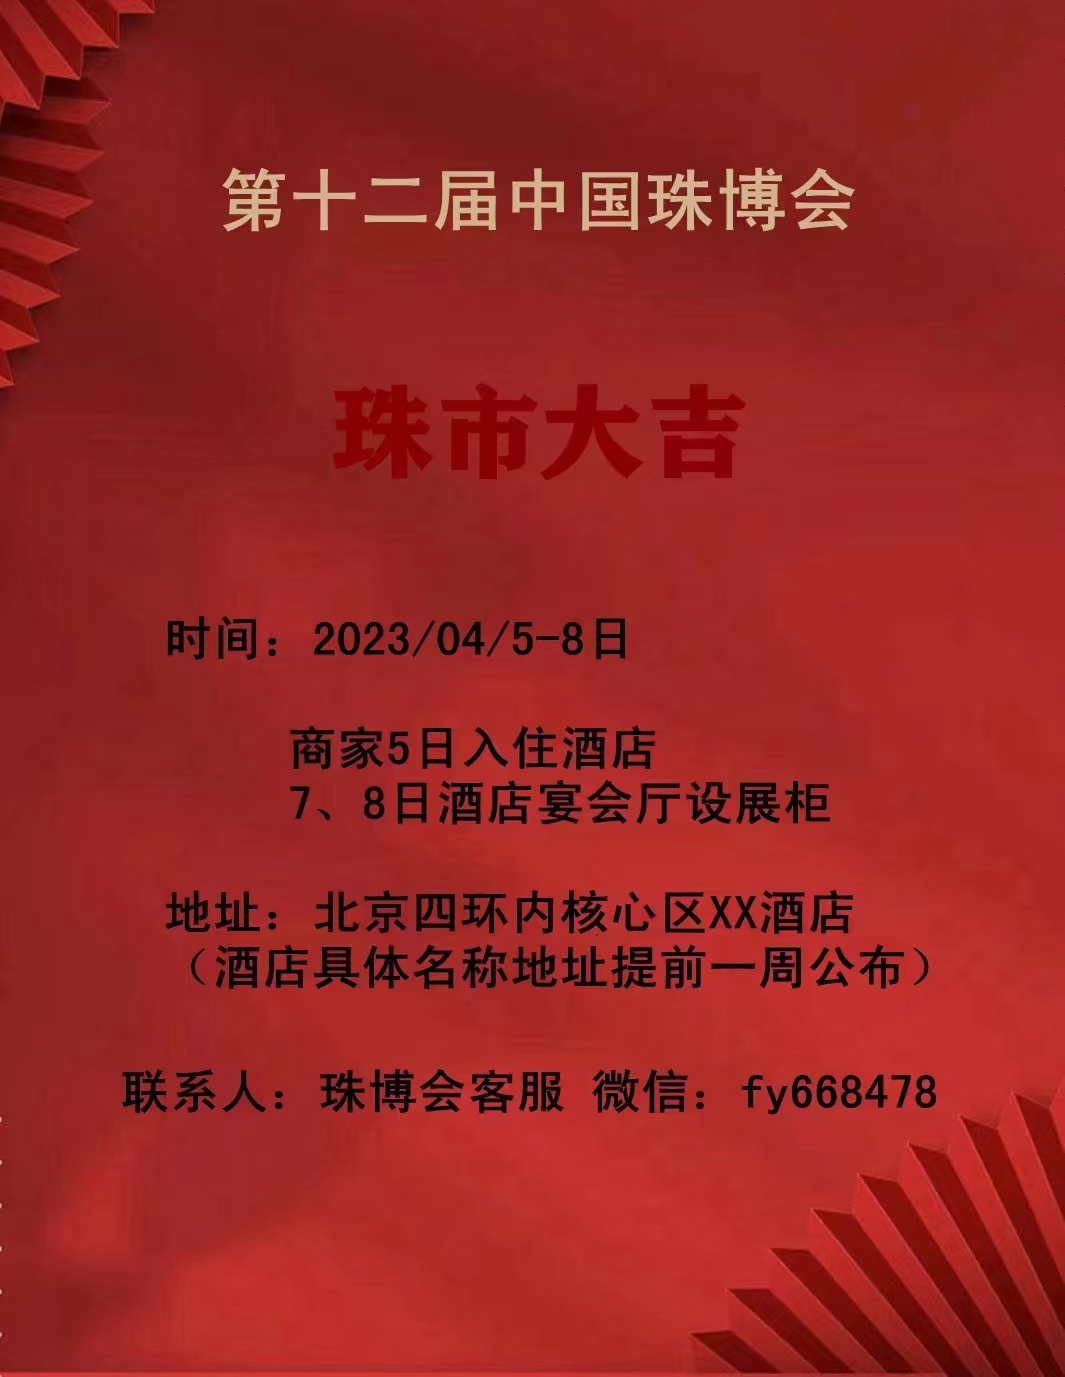 2023年04月5日-8日 第十二届中国珠博会